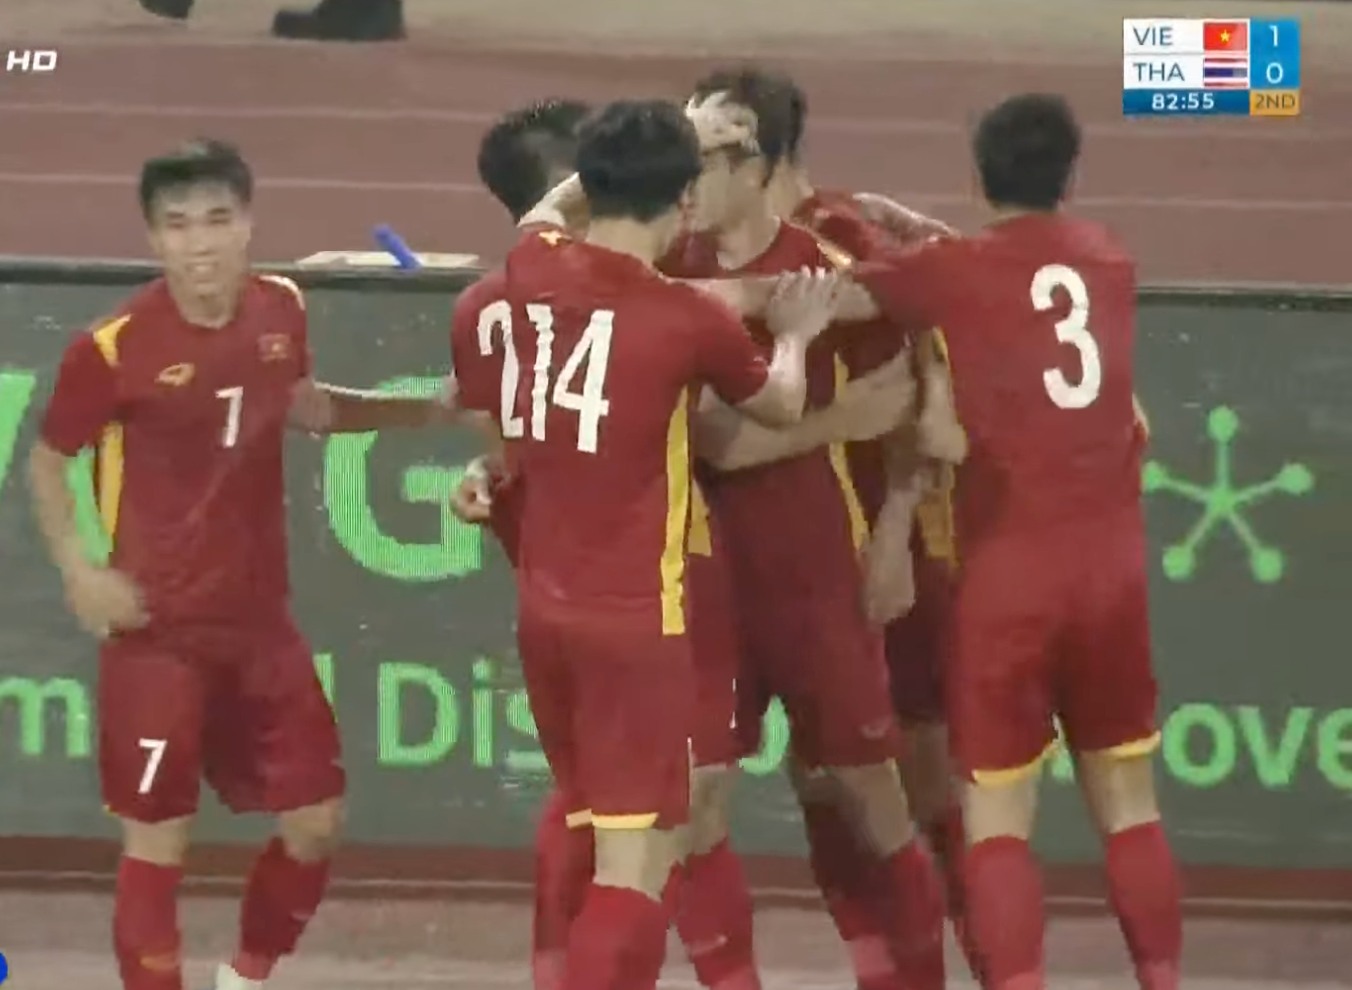 HLV Park Hang Seo bật khóc khi lần cuối cùng dẫn dắt U23 Việt Nam giành HCV tại SEA Games